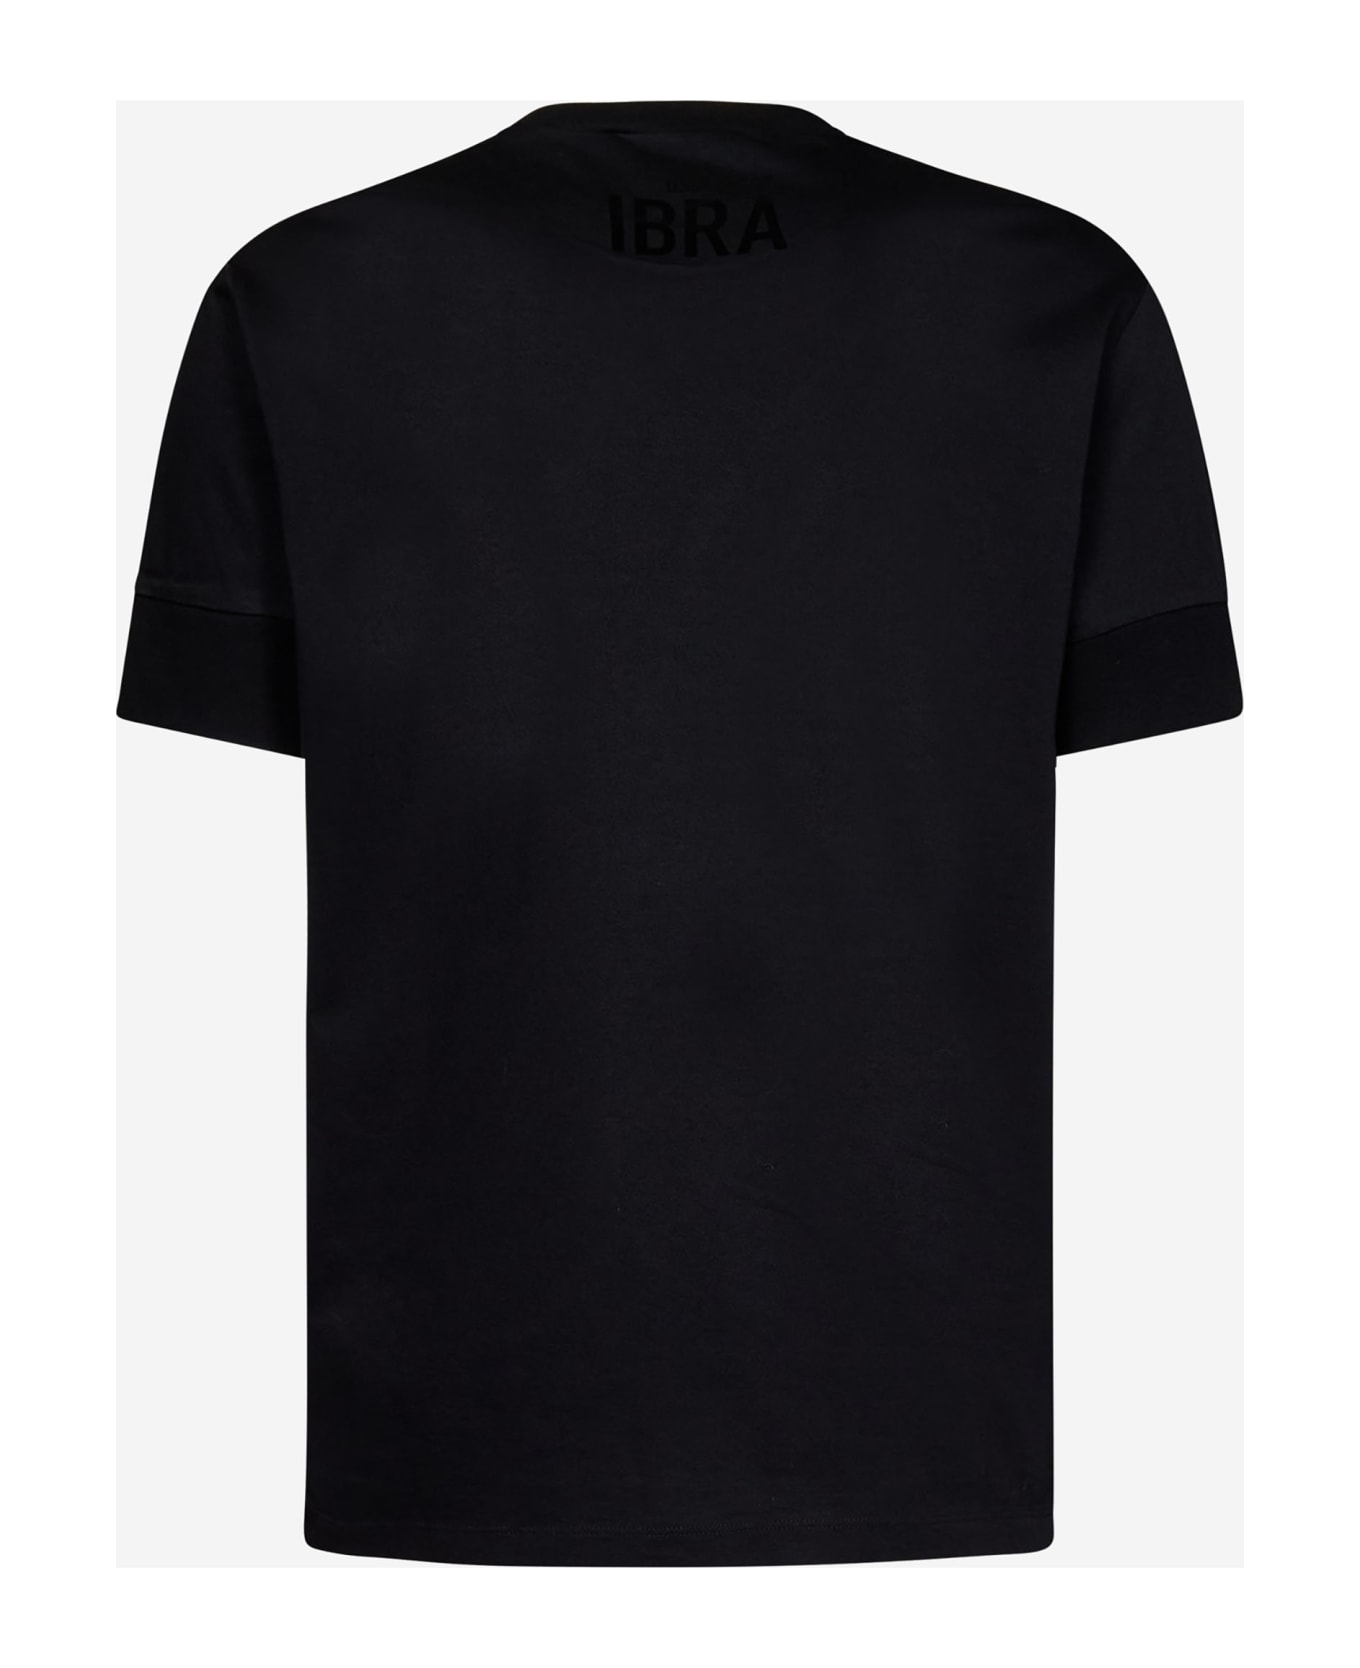 Dsquared2 Ibra Black T-shirt - Black